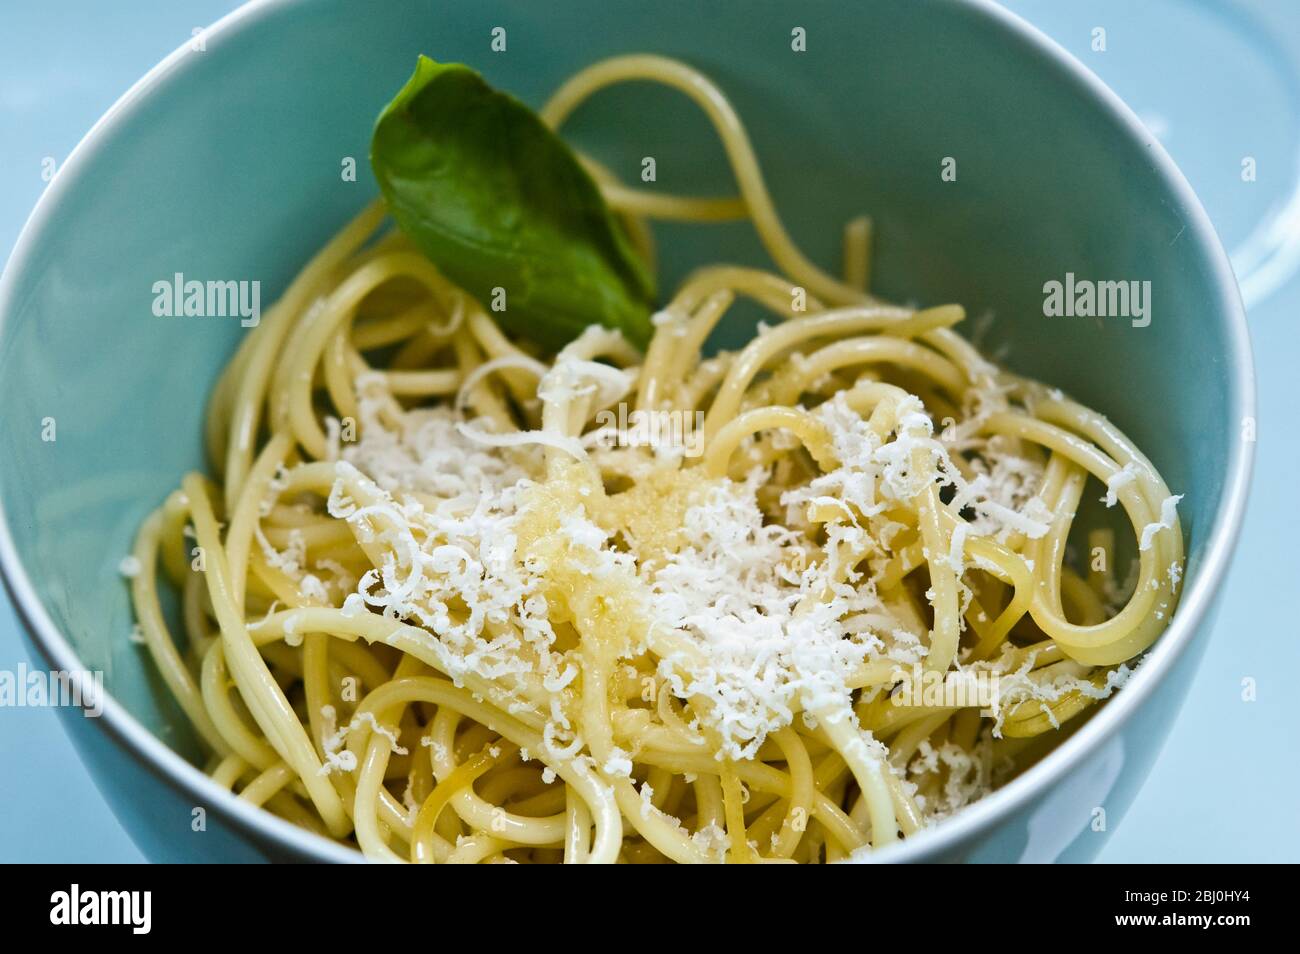 Schale mit Spaghetti mit Olivenöl und frisch geriebenem Parmesan in Seladonschüssel - Stockfoto